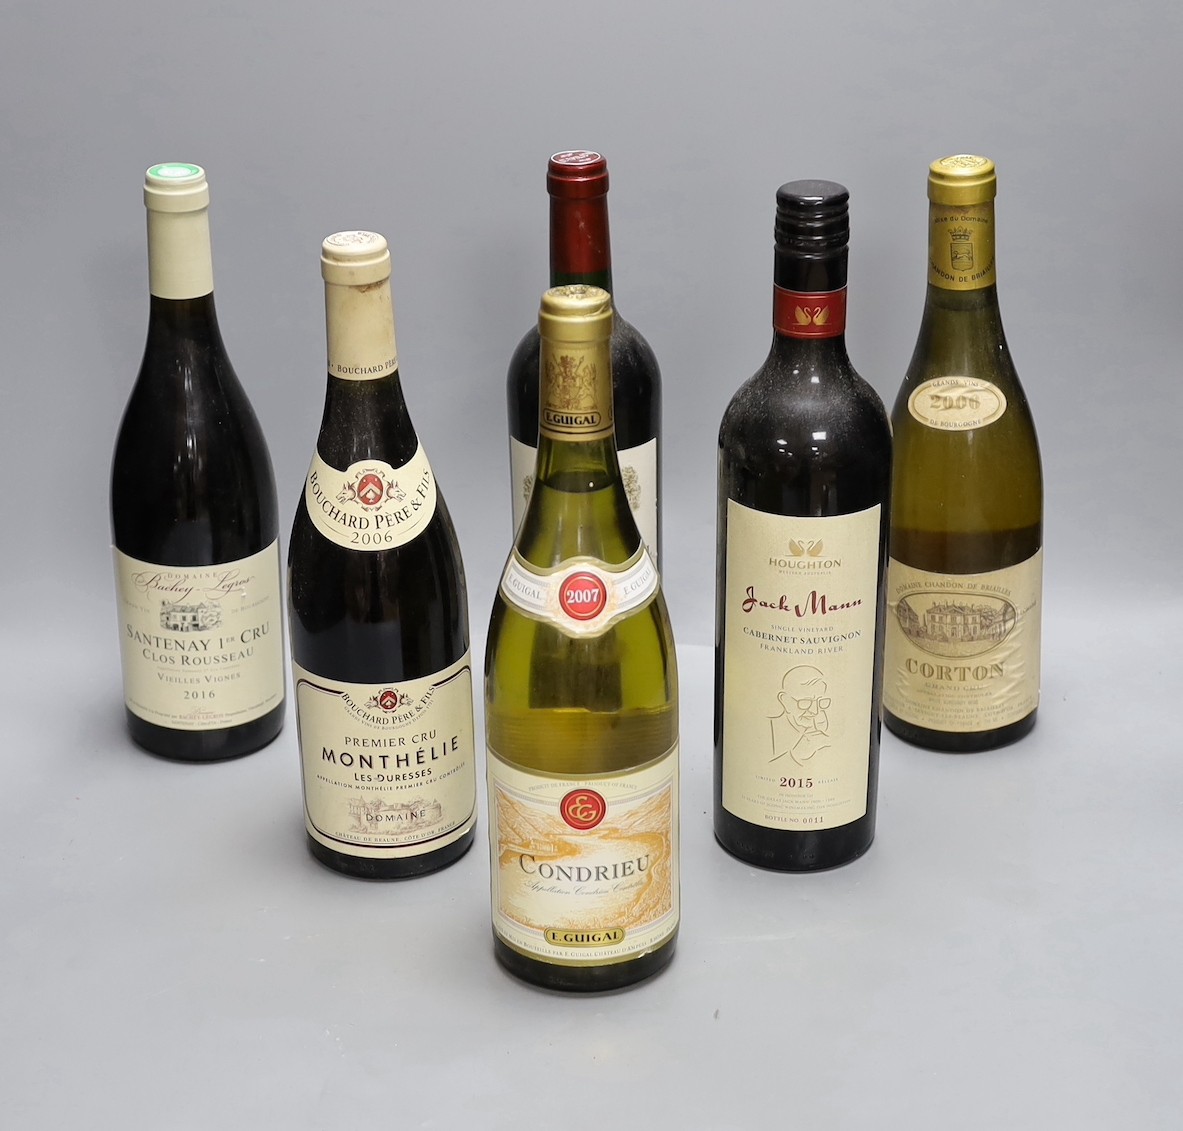 Six bottles of wine to include Bouchard Père & Fils Monthélie 2006, Chateau De Fonbel Saint Emilion Grand Cru 2009, E. Guigal Condrieu 2007, Houghton Jack Mann Cabernet Sauvignon 2015, Corton Grand Cru 2006 and Santenay